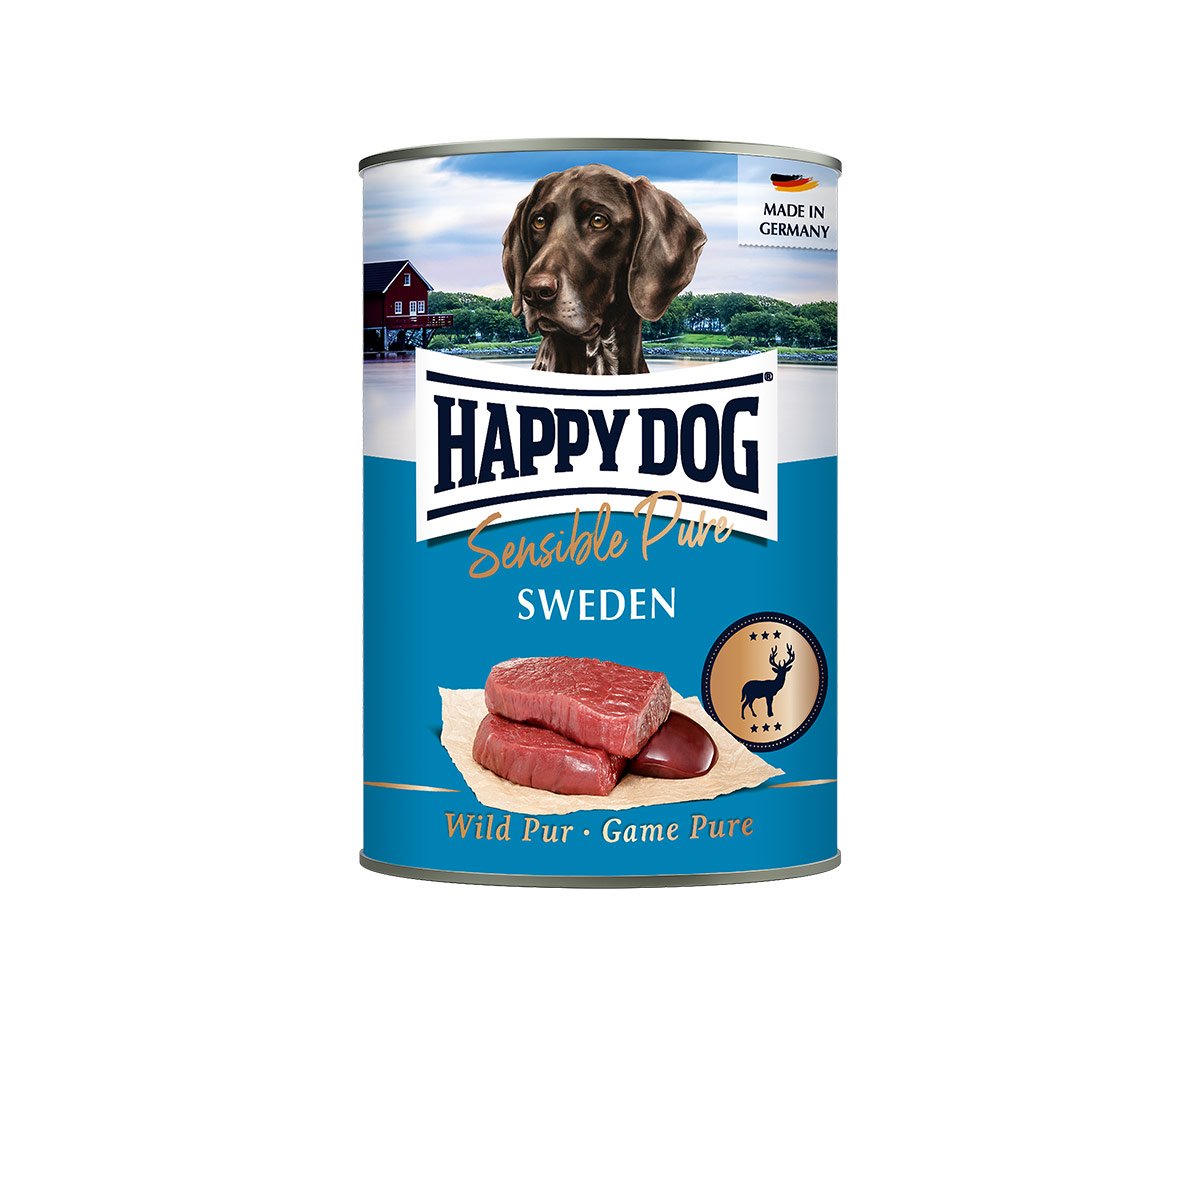 Happy Dog Sensible Pure Sweden (Wild) 6x400g – mit 20% Rabatt günstig kaufen